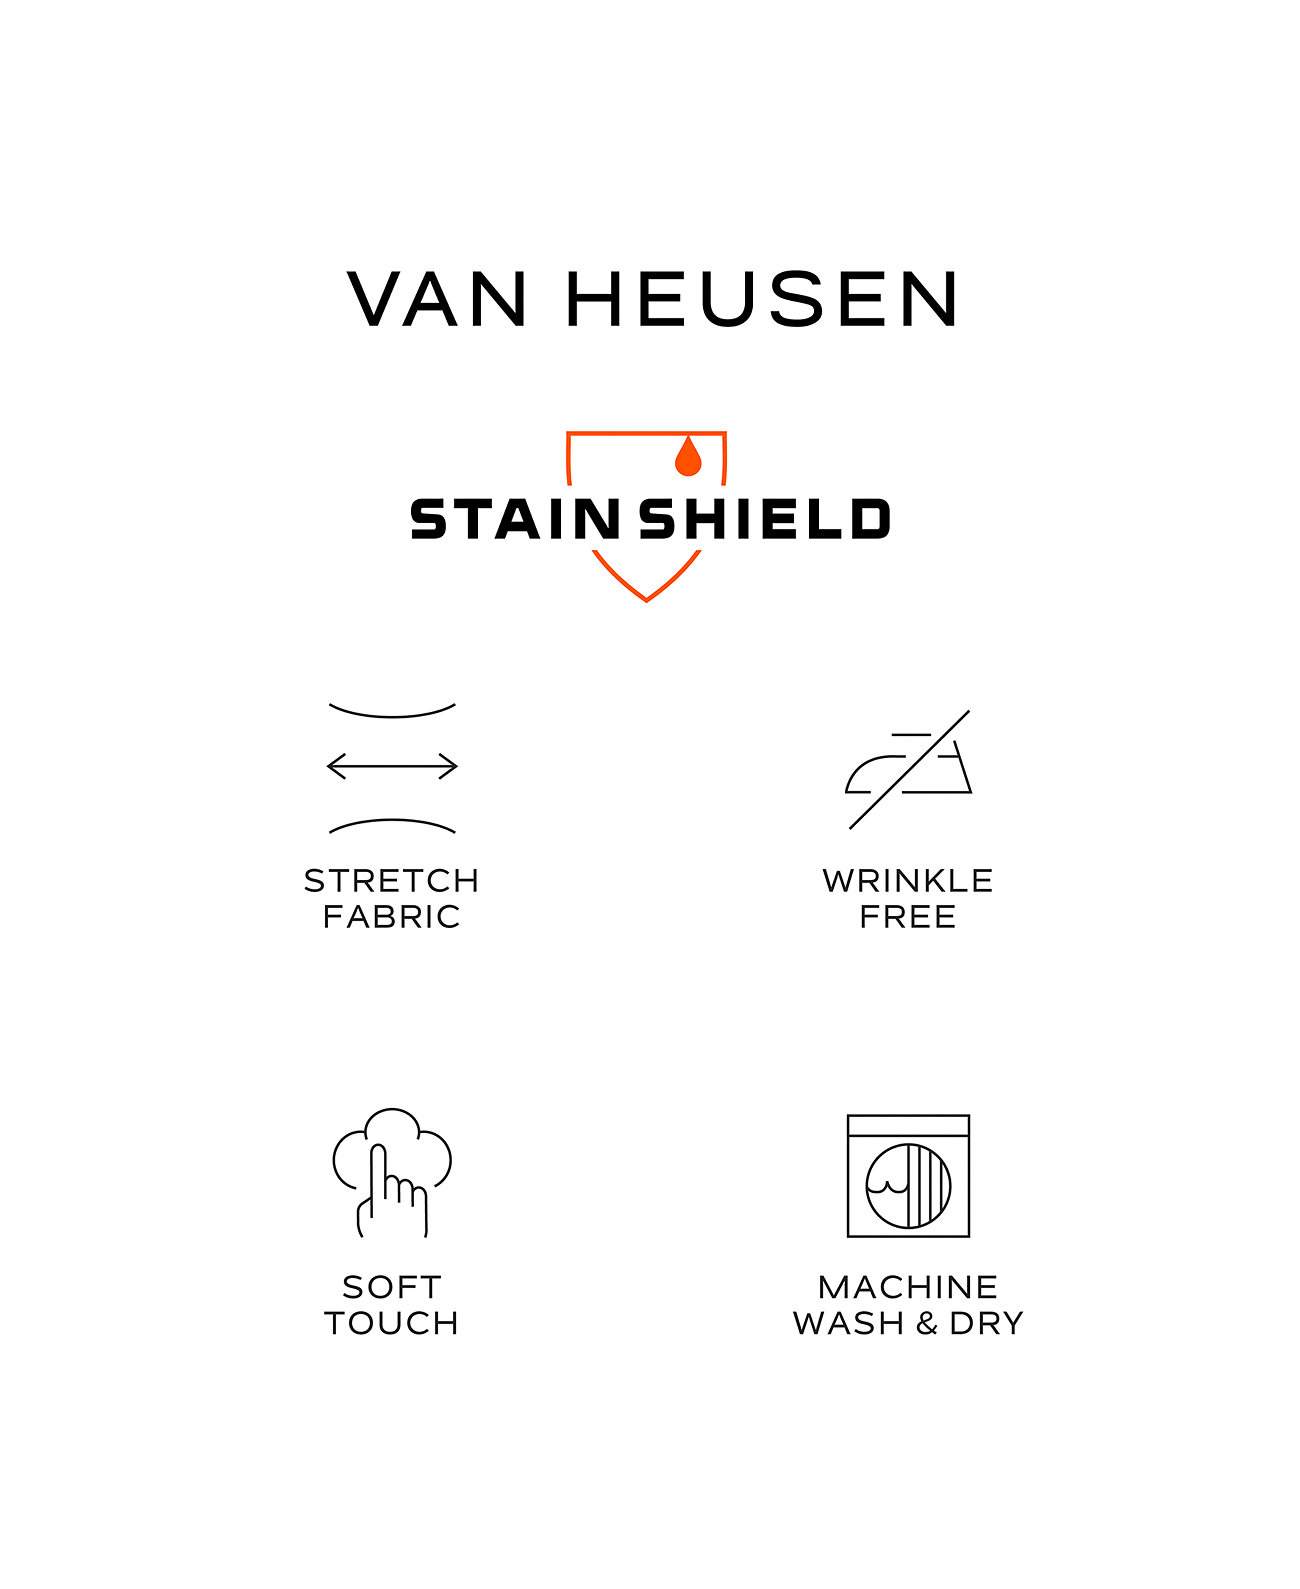 Мужская классическая рубашка классического кроя Stain Shield Van Heusen